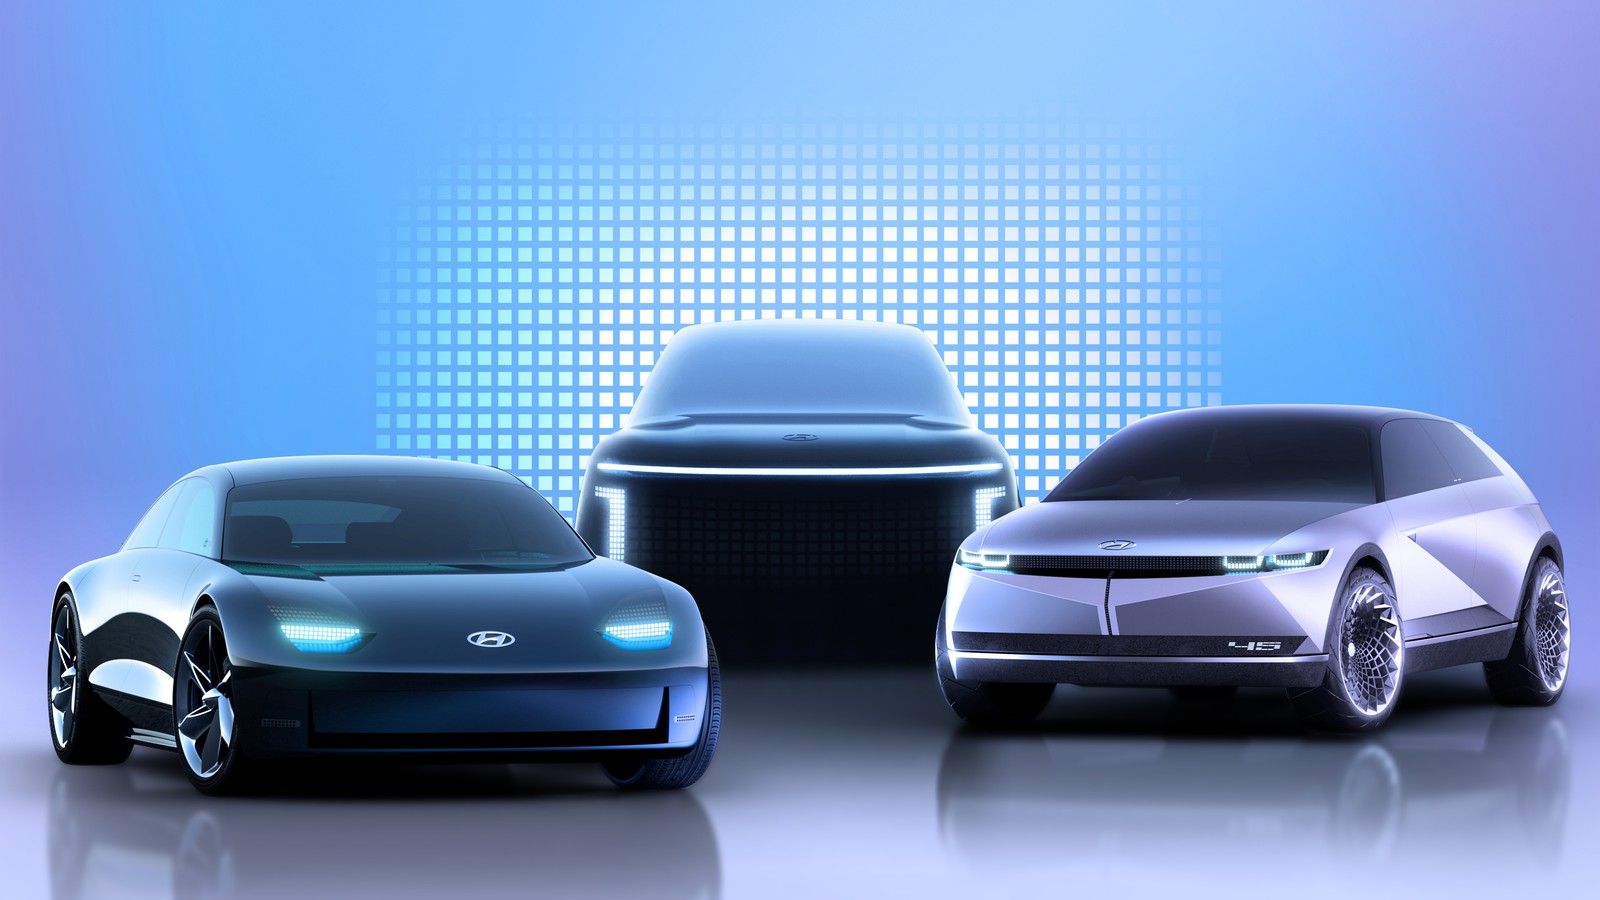 Ioniq heißt die neue ElektroautoSubbrand von Hyundai. Der